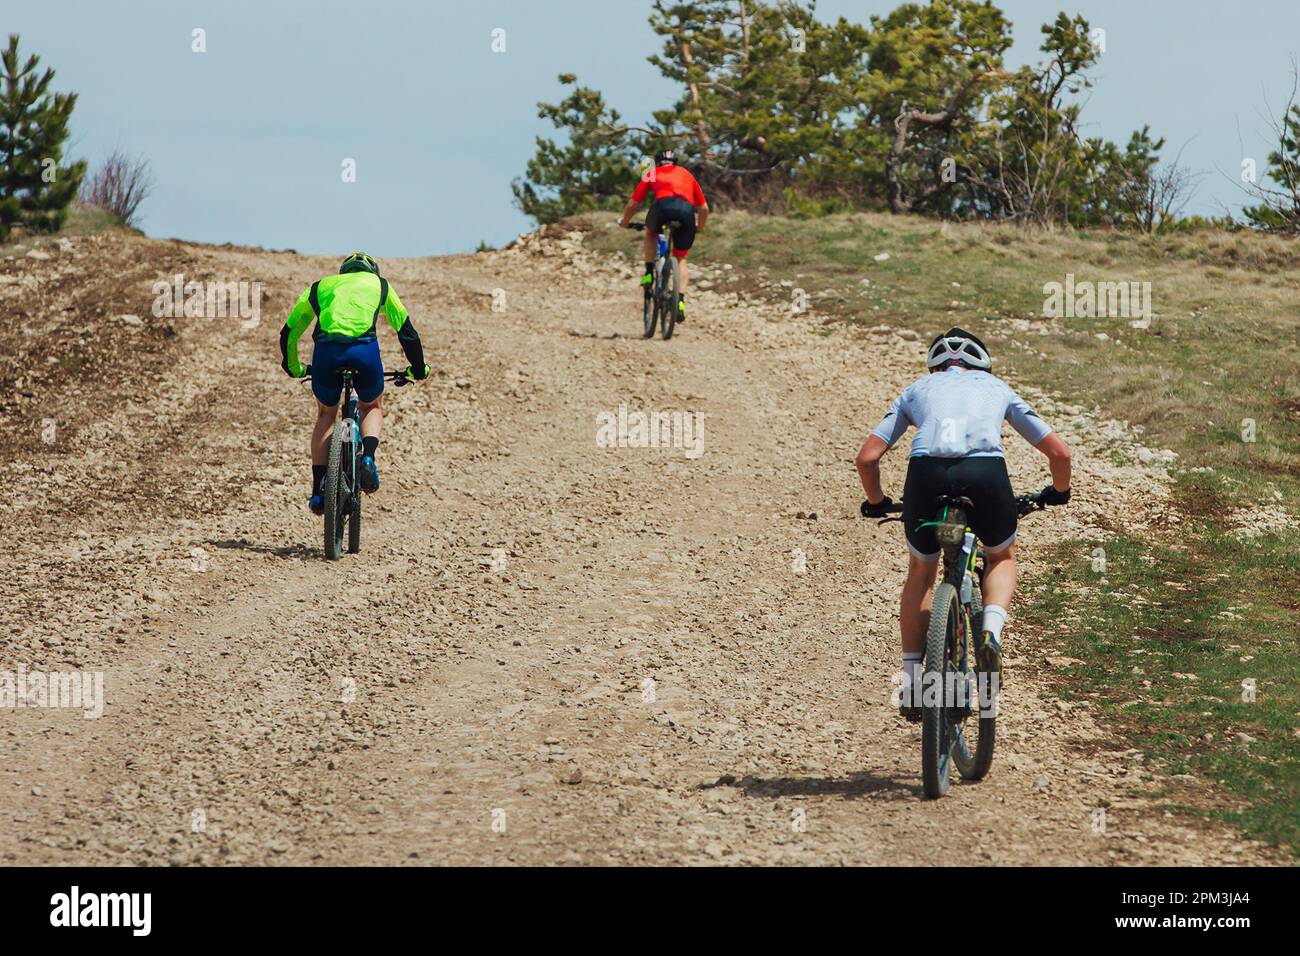 vue arrière trois alpinistes qui font du vélo en montée, du vélo sur route de gravier, de la compétition cycliste Banque D'Images